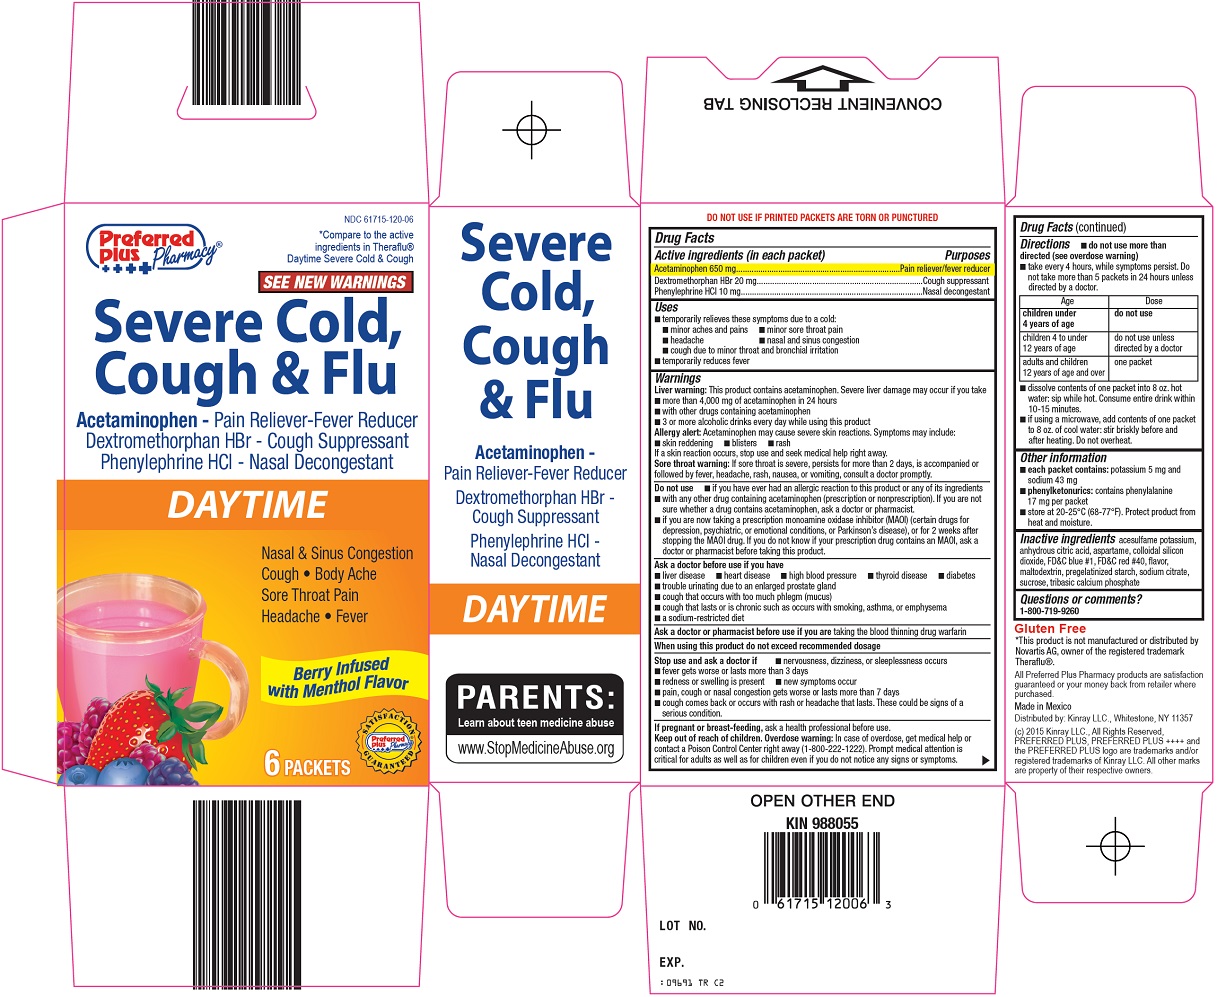 Preferred Plus Severe Cold cough & Flu Image